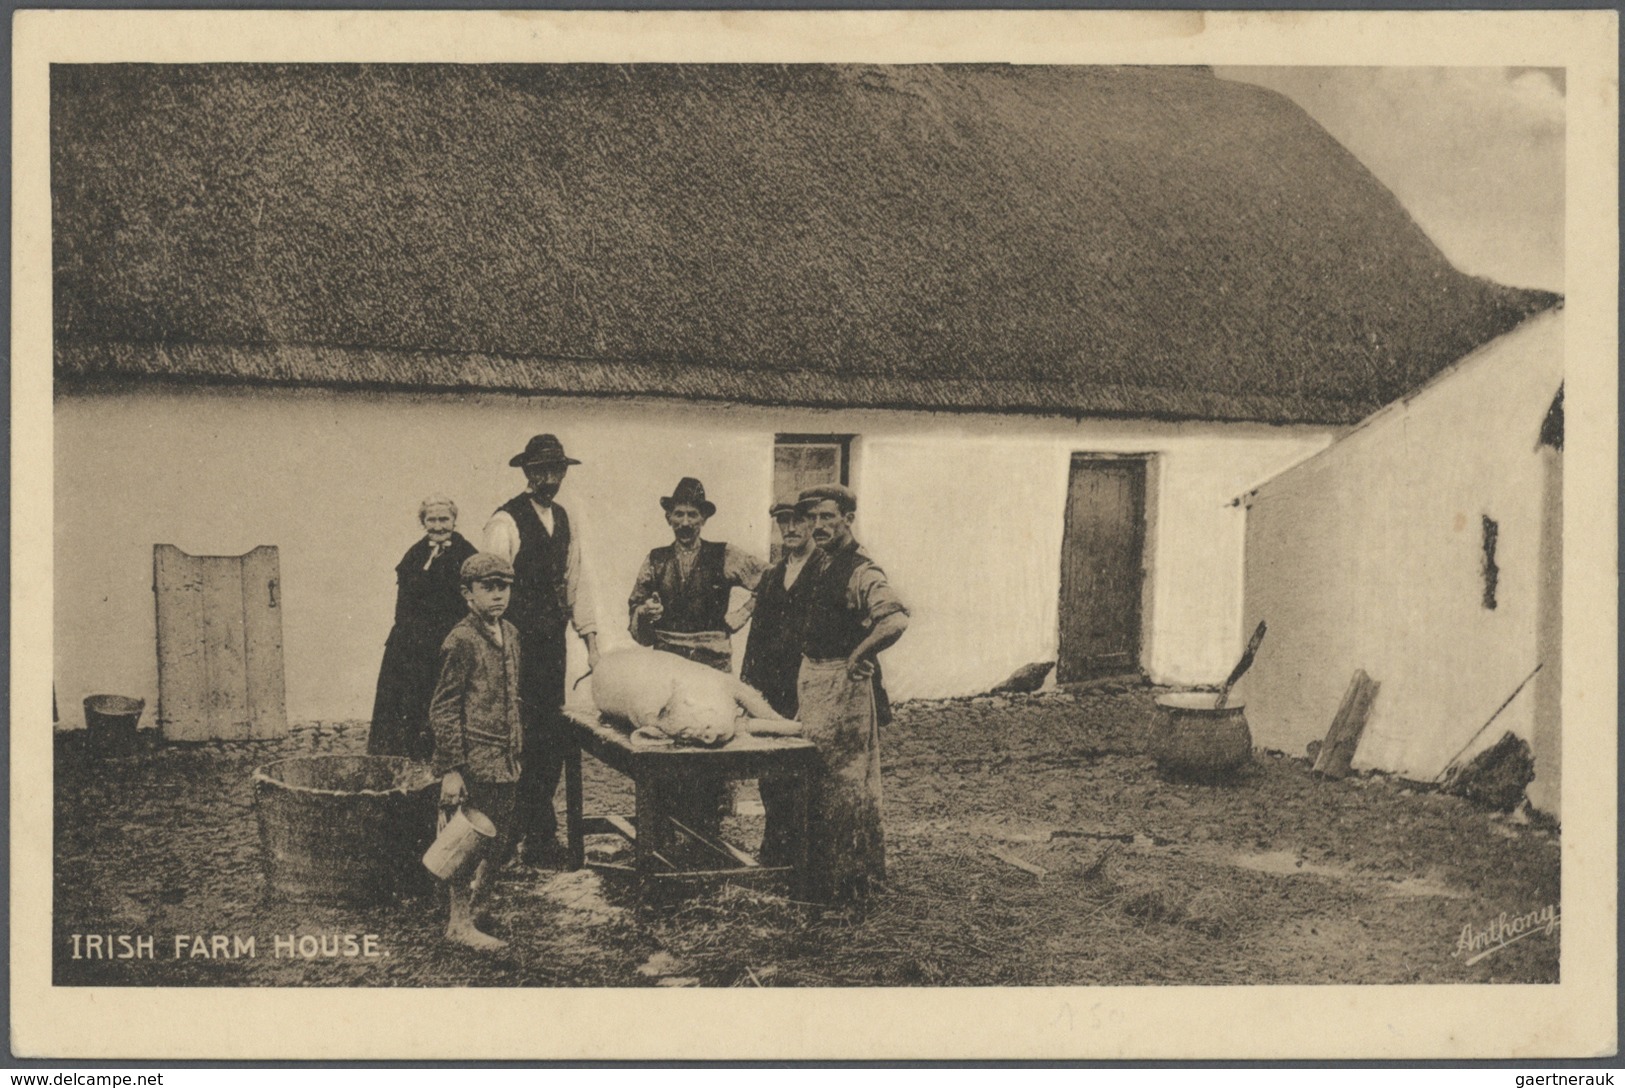 Irland - Besonderheiten: 1900/1960, reichhaltiger Bestand mit über 600 alten Ansichtskarten aus Belf